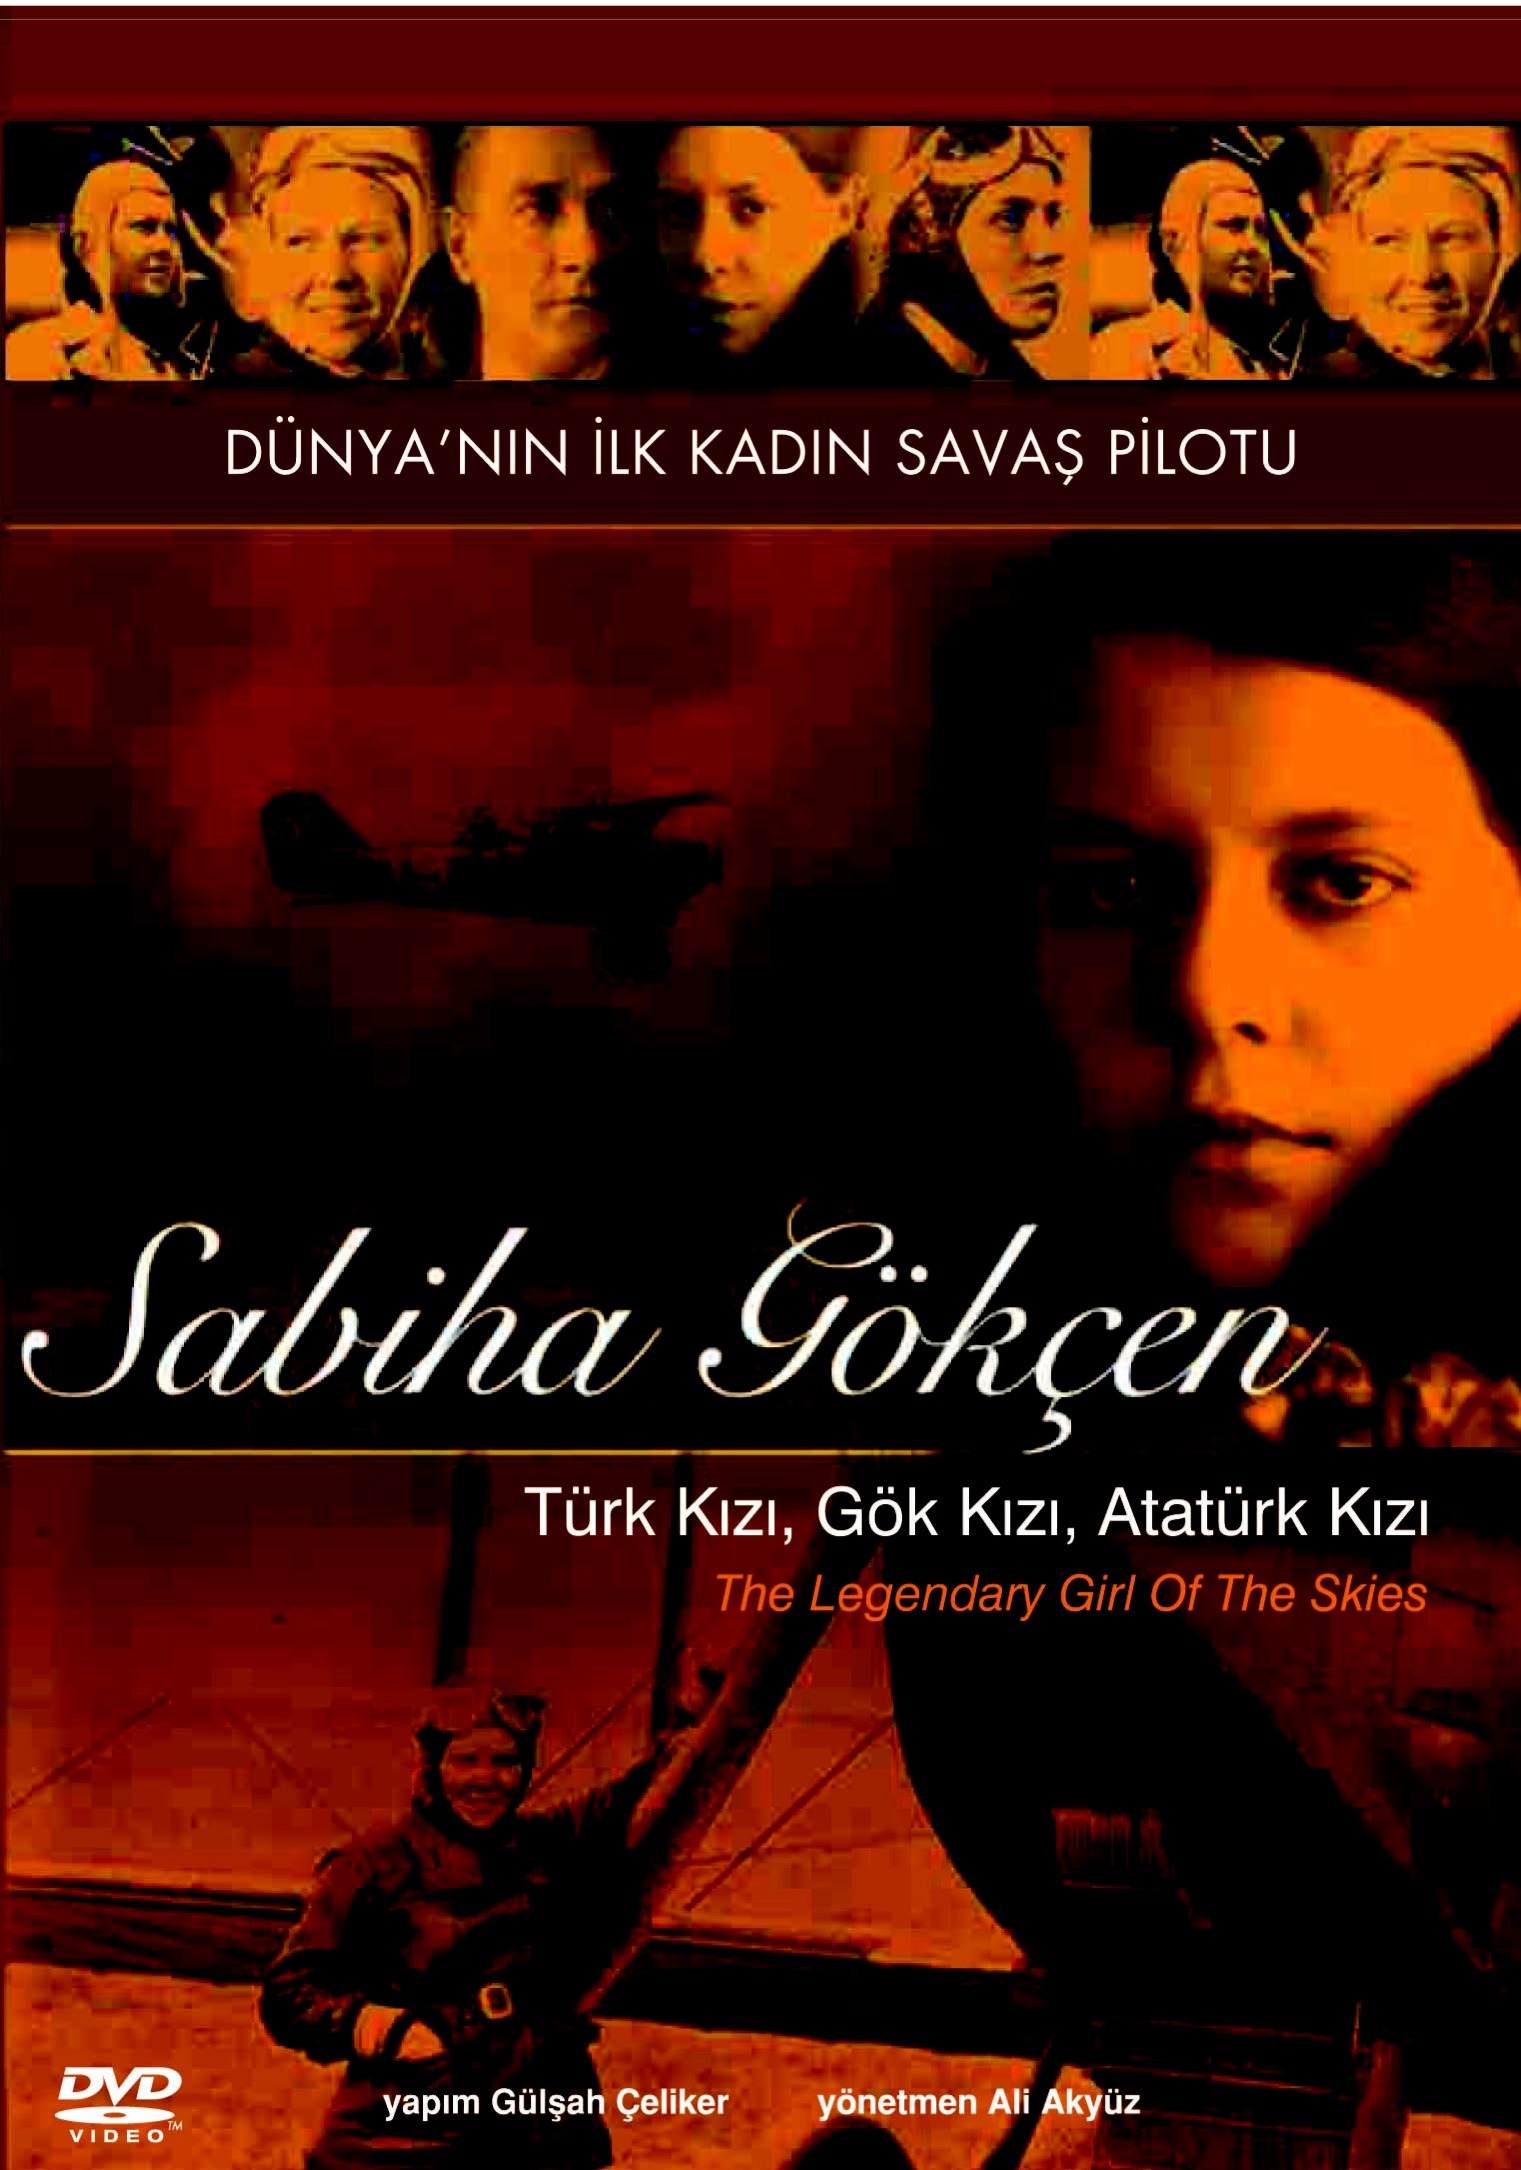 Türk Kızı, Gök Kızı, Atatürk Kızı; Sabiha Gökçen ( Sabiha Gökçen, The Legendary Girl of The Skies )